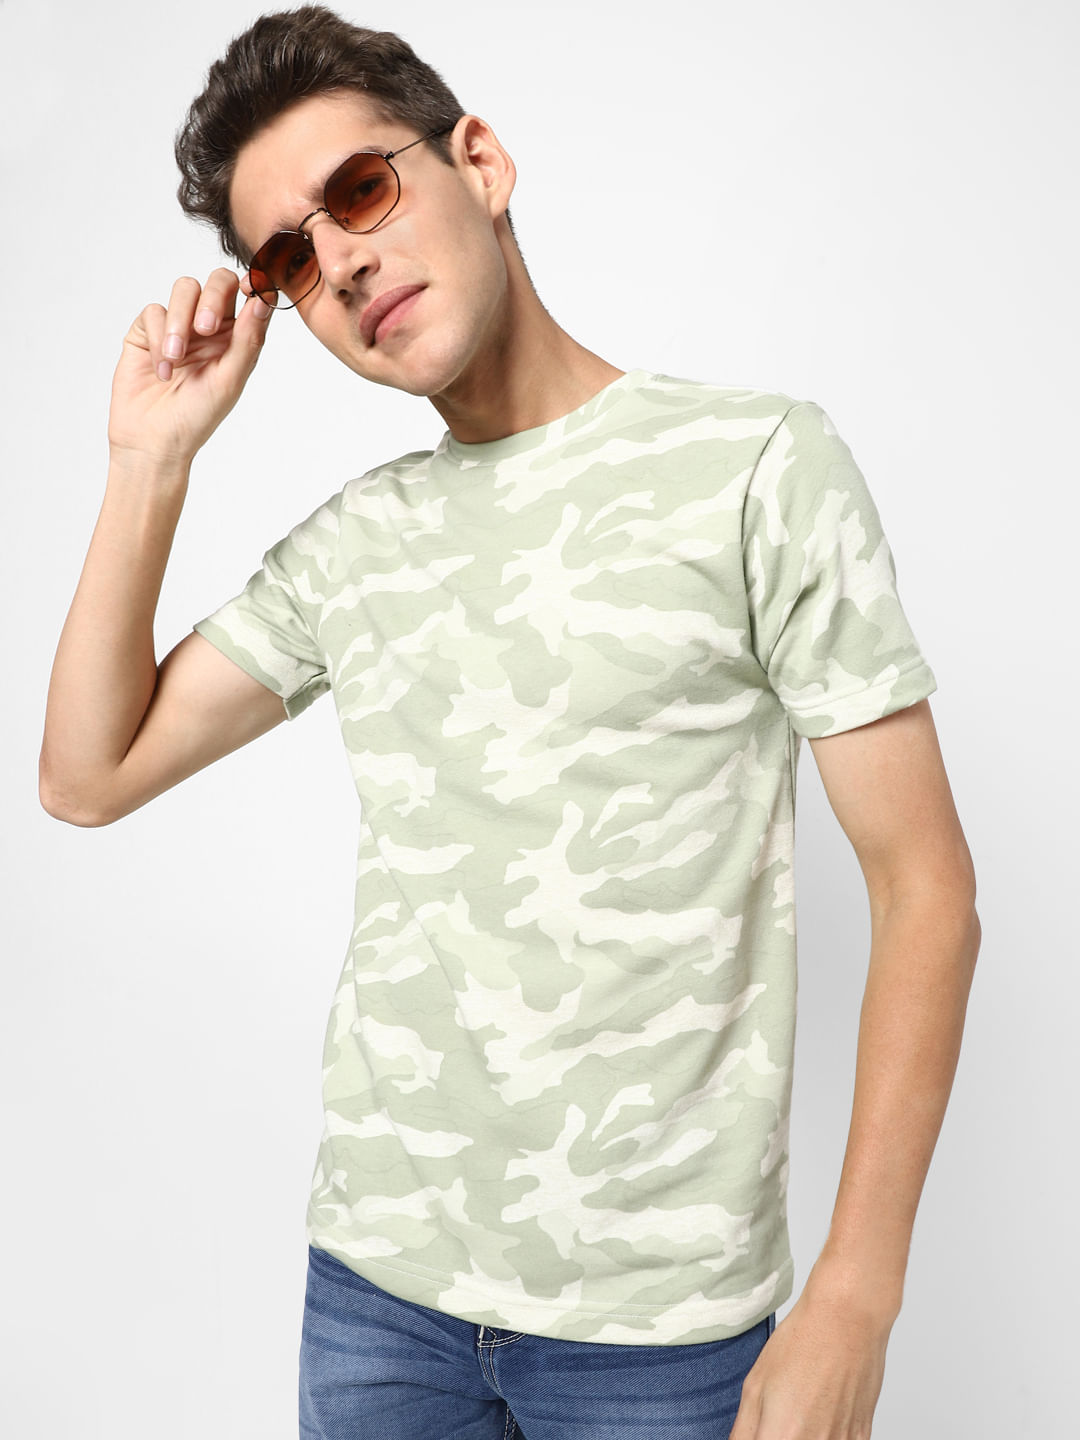 Green M Belcci Shirt discount 68% WOMEN FASHION Shirts & T-shirts Shirt Camo 